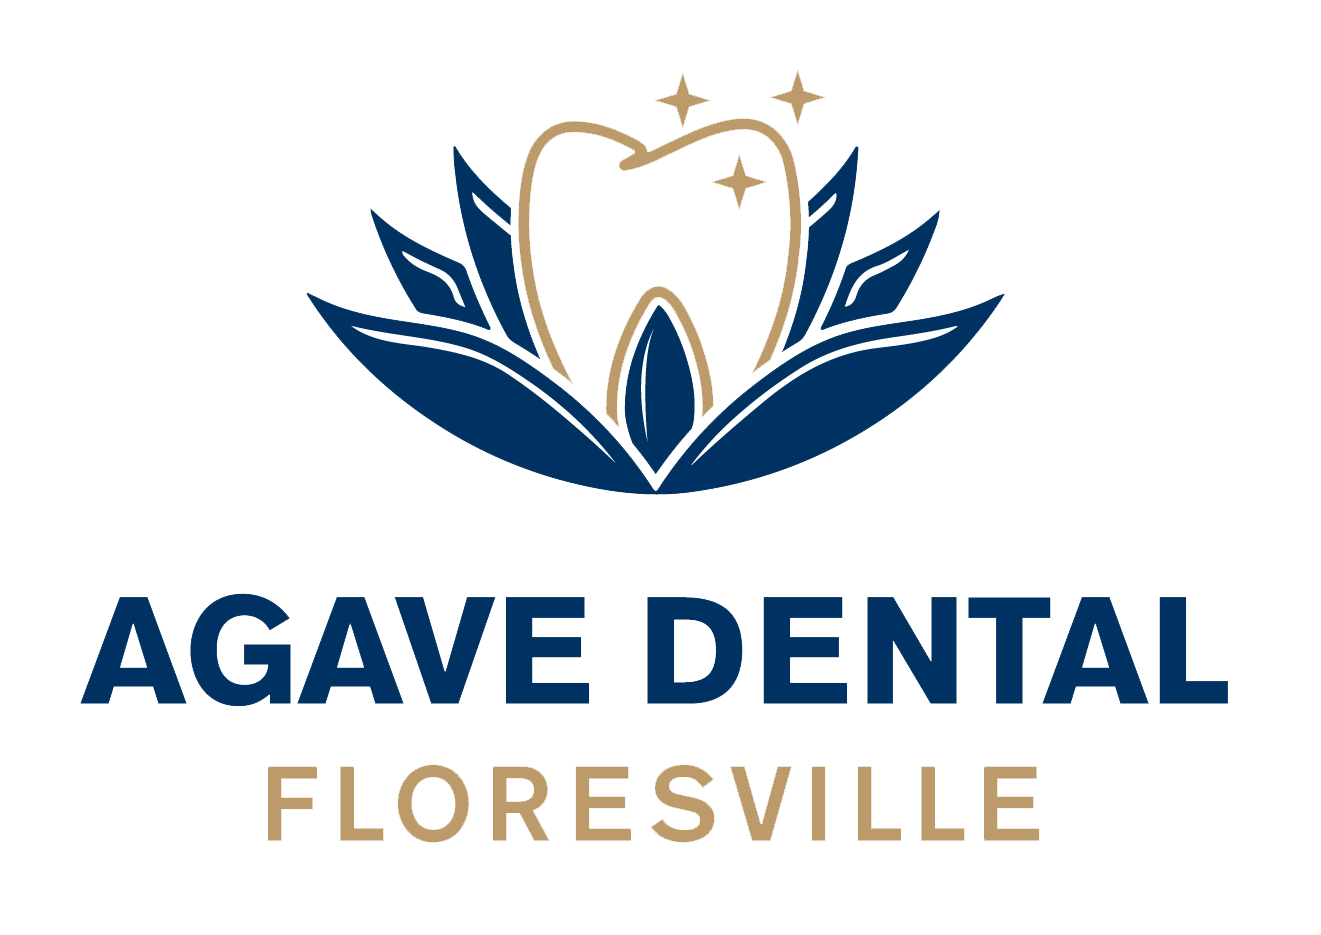 Agave Dental Floresville